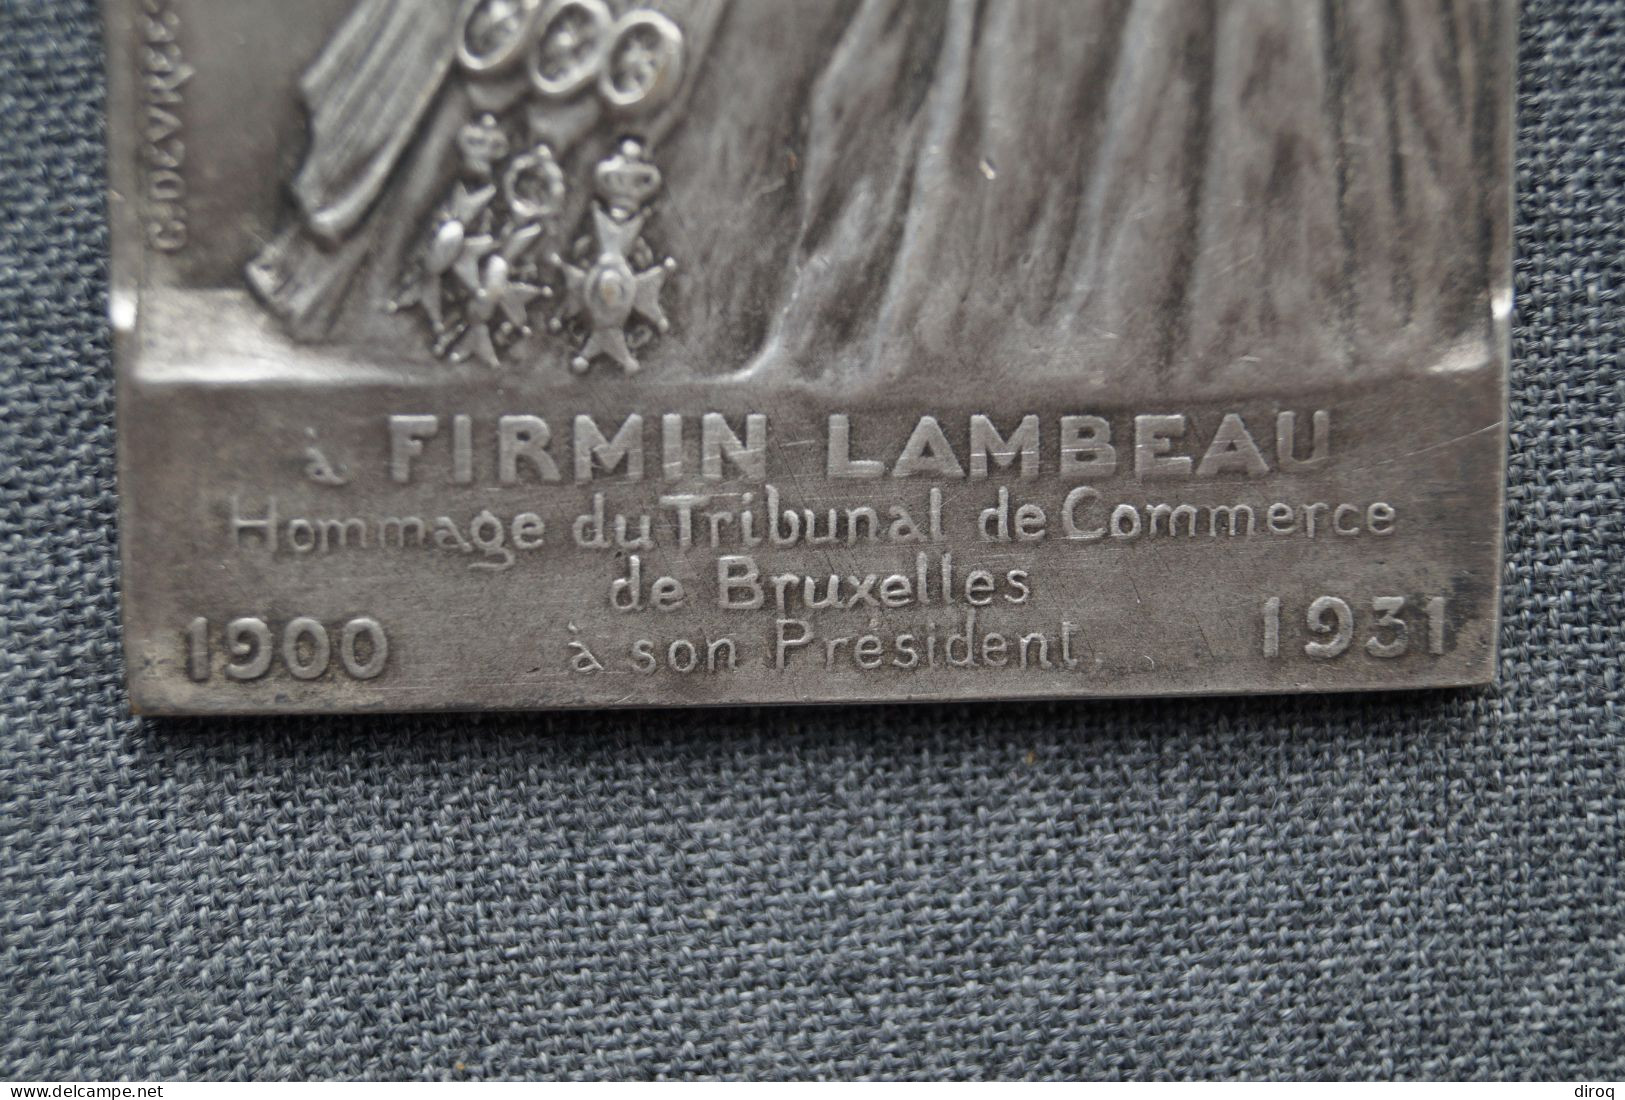 Ancien Bronze,tribunal De Commerce De Bruxelles,1900-1931,à Firmin Lambeau,85 Mm./53 Mm. - Bronzes